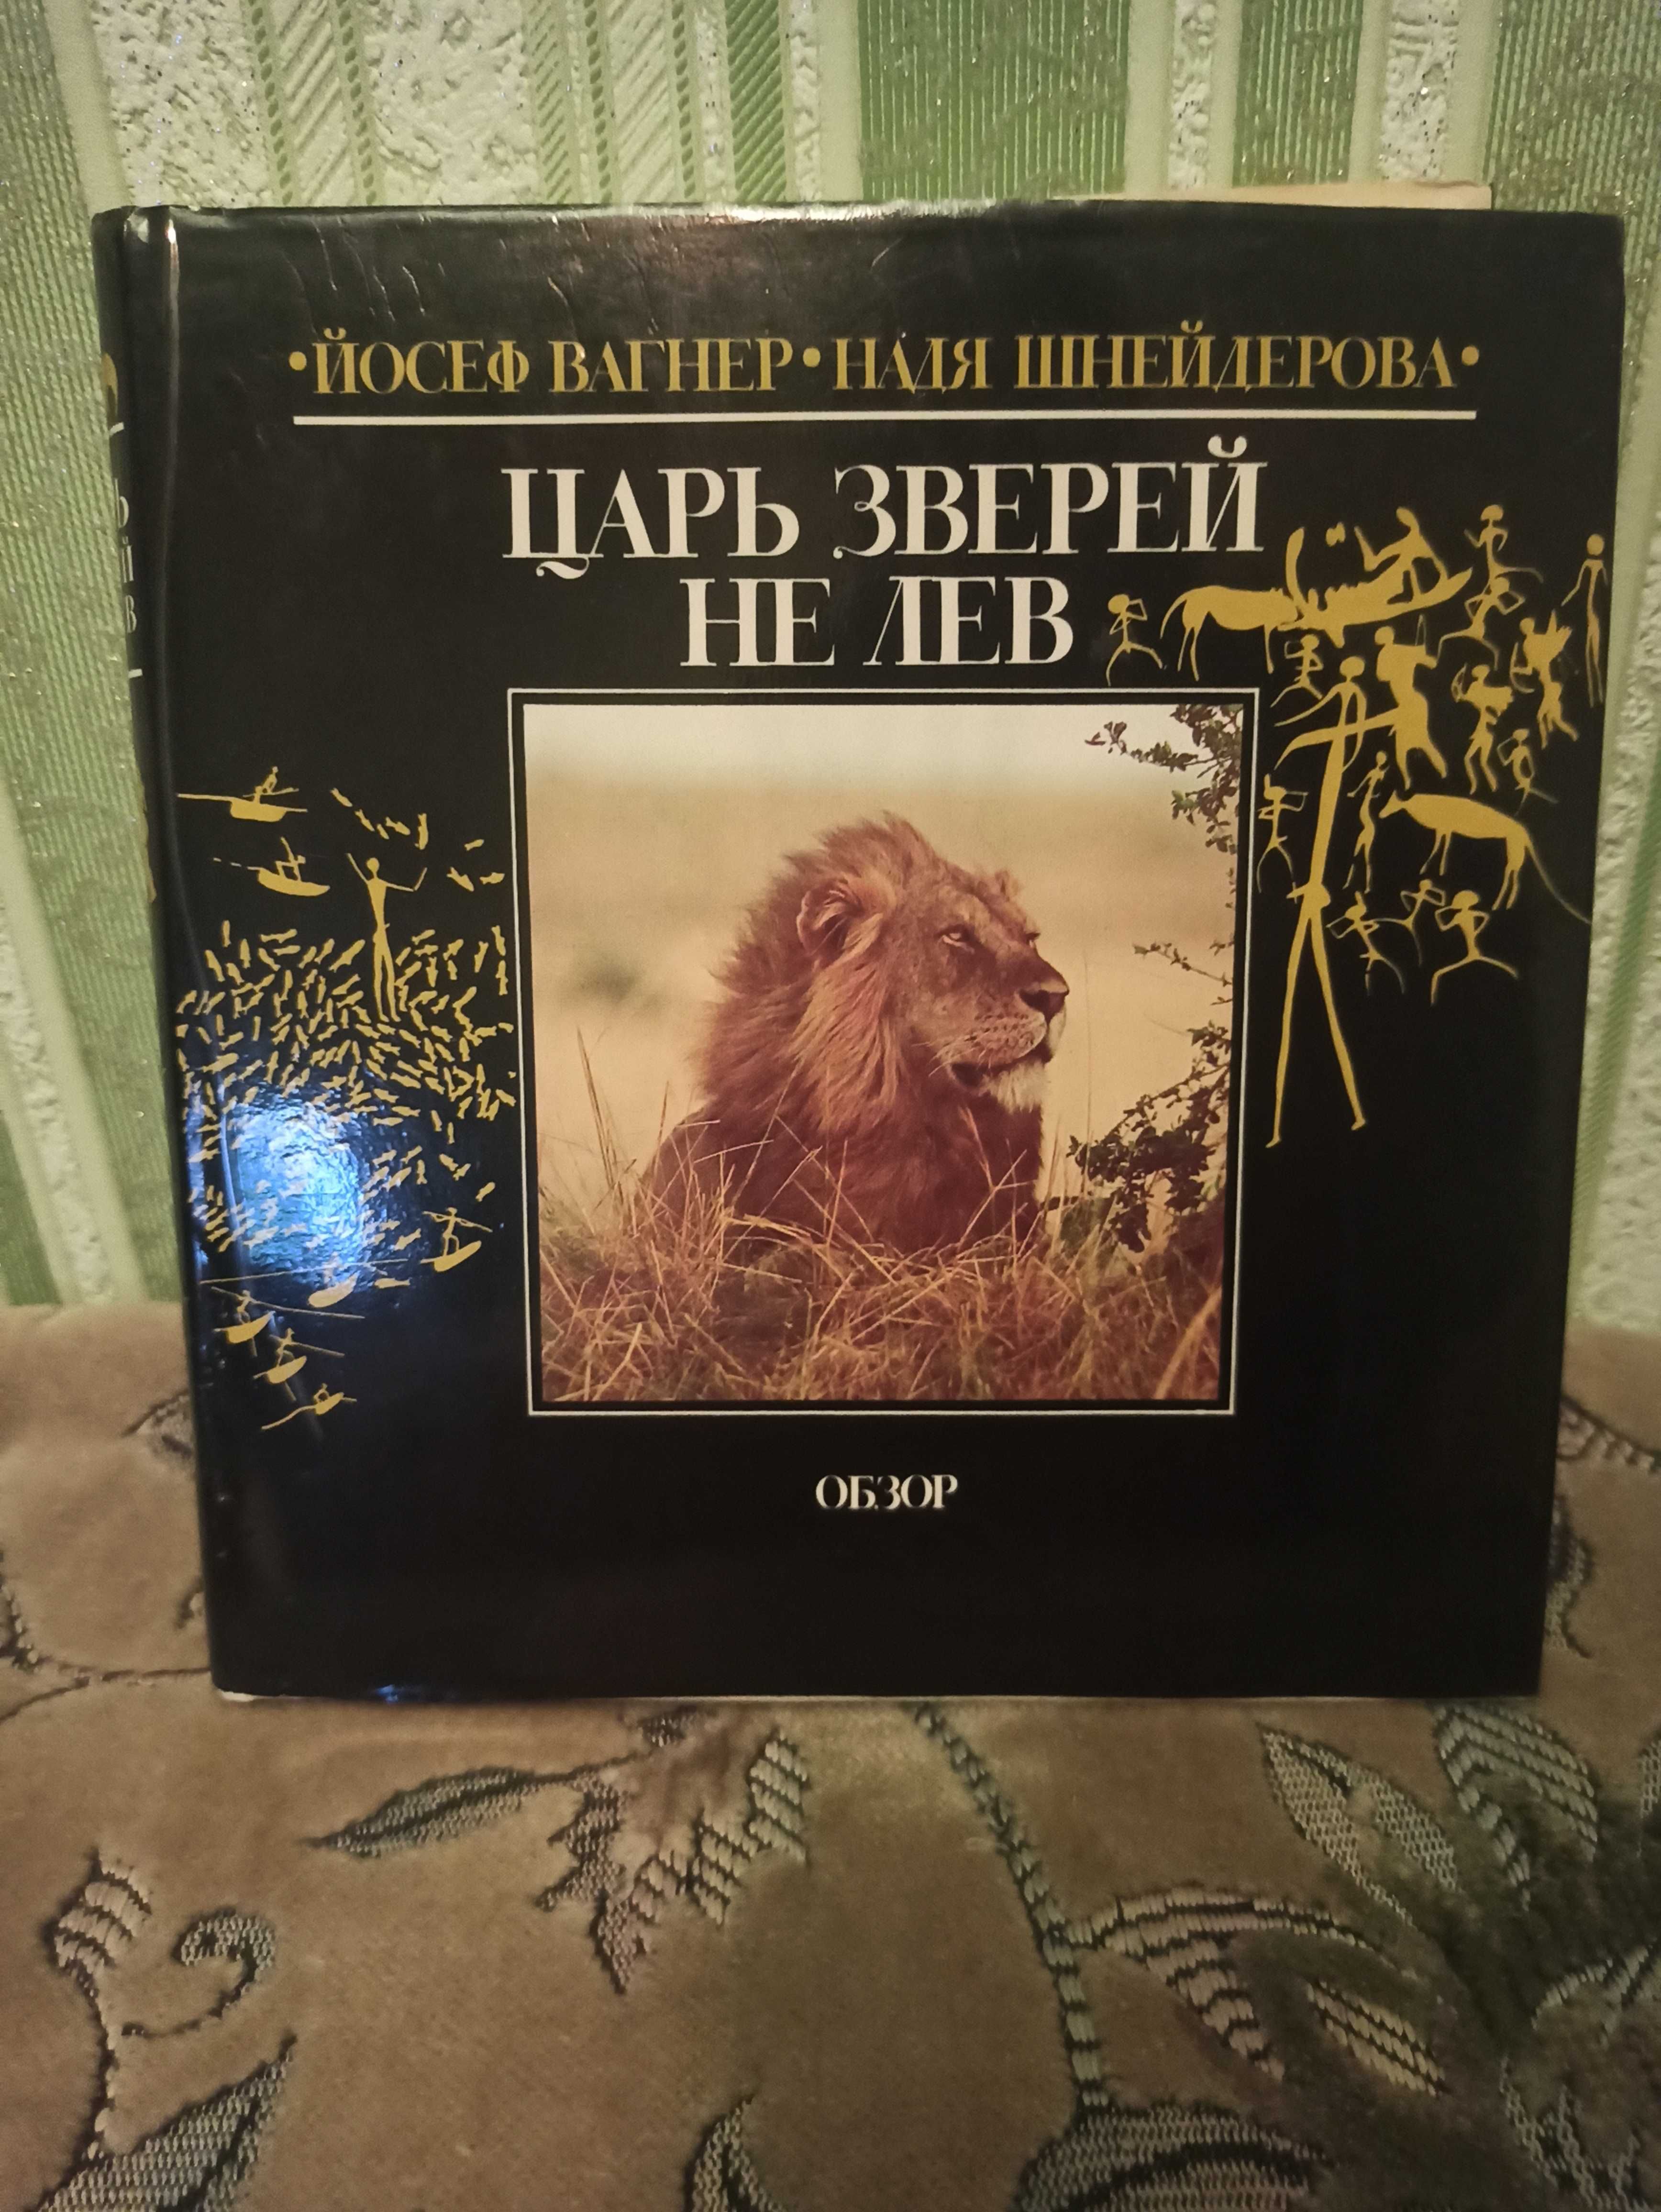 Книга про Африку и животных "Царь зверей не лев". Й. Вагнер.